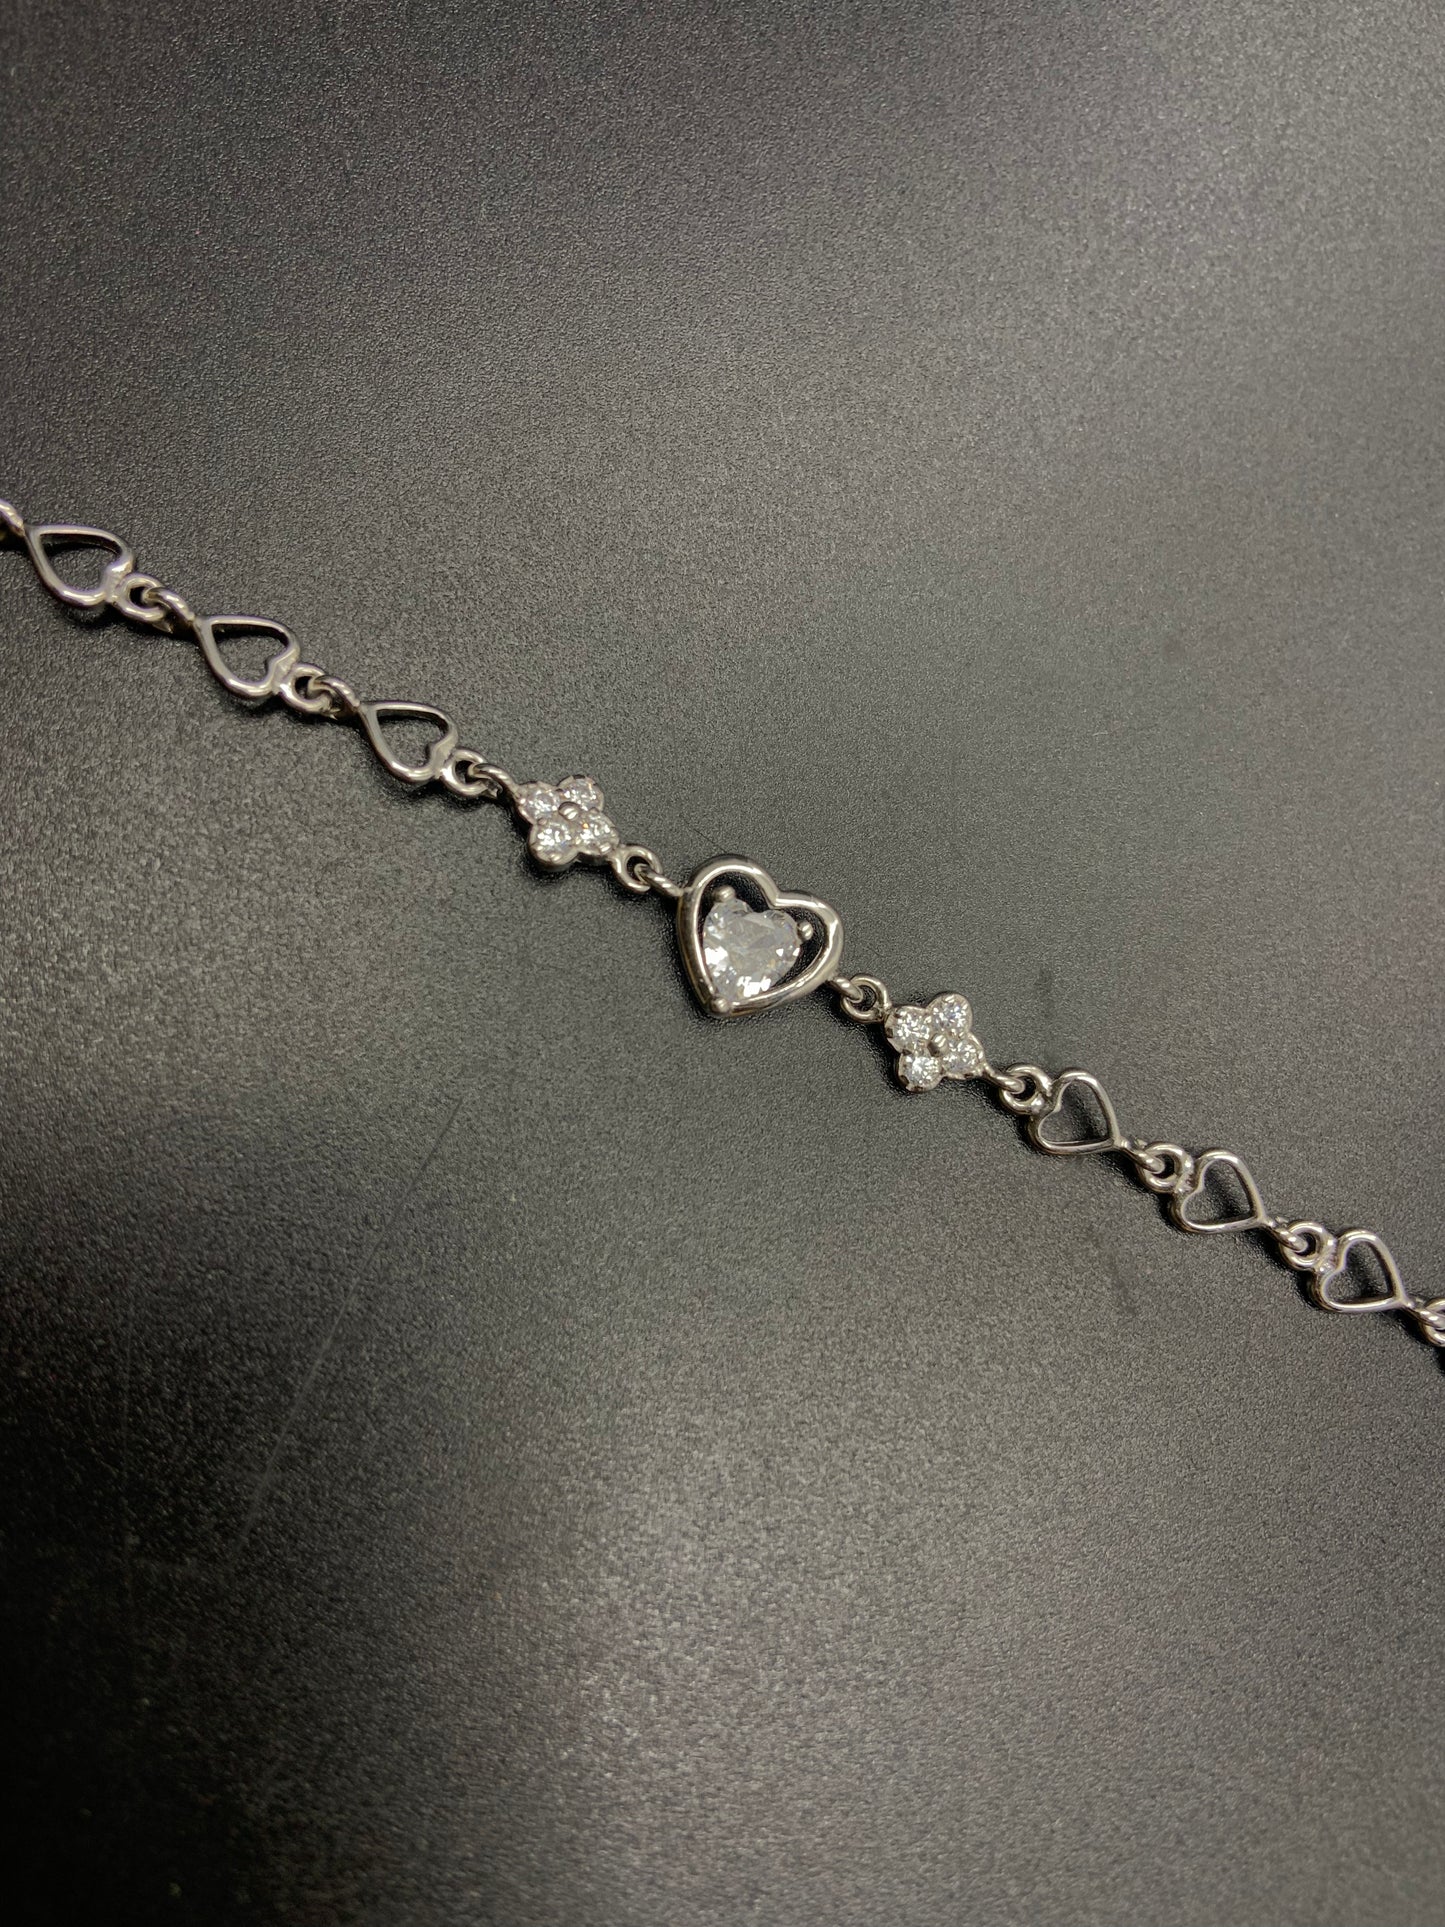 Silver Ladies Bracelet